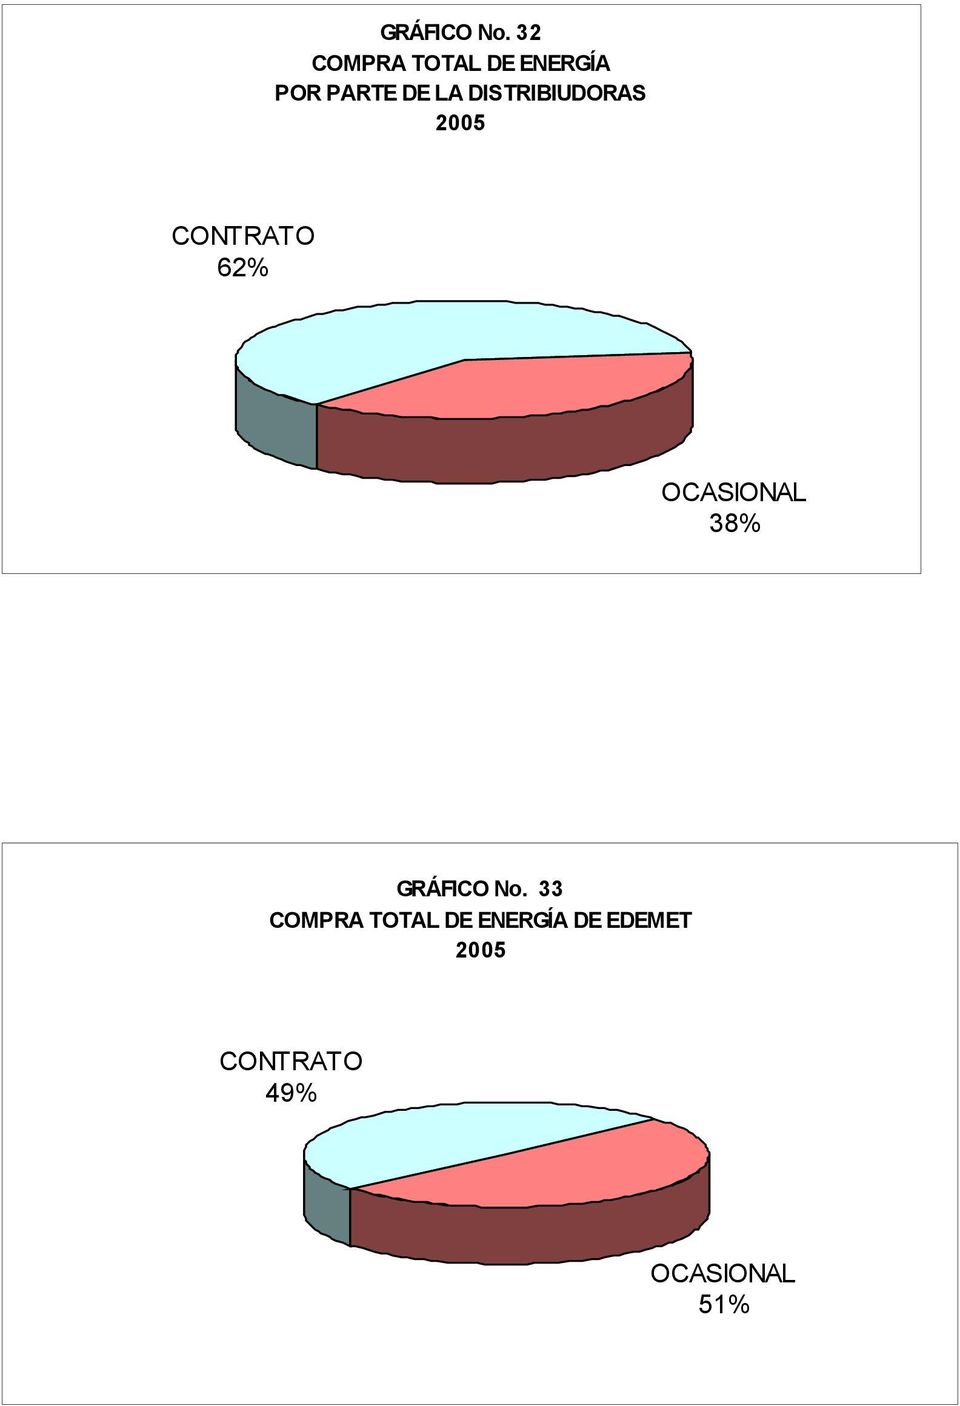 DISTRIBIUDORAS CONTRATO 62% OCASIONAL 38% 